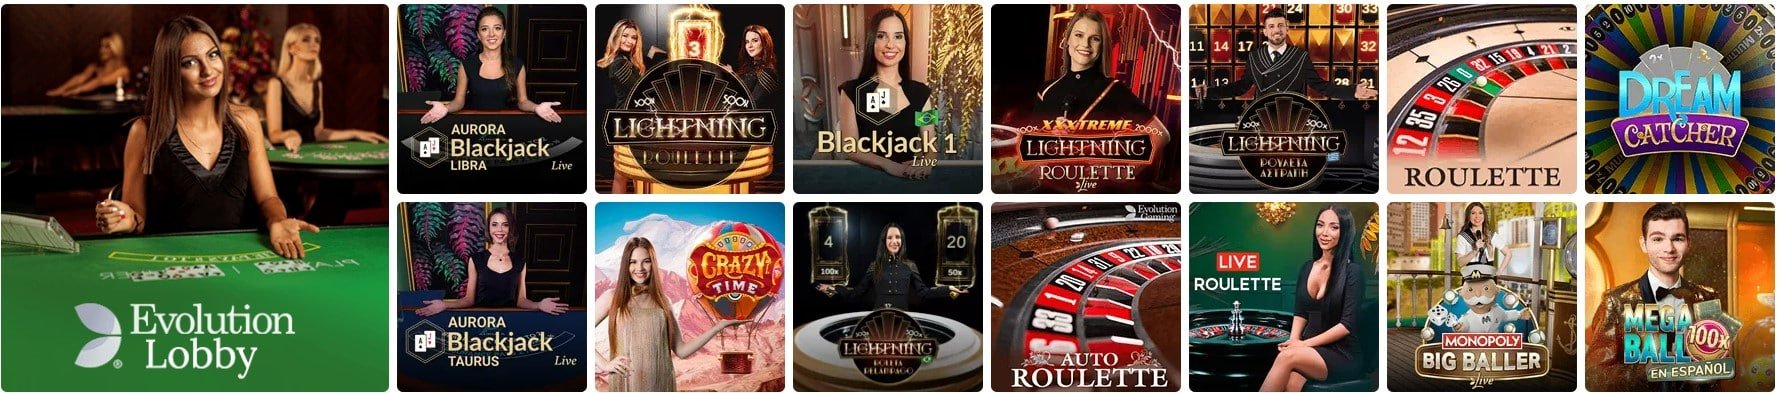 20bet casinos en vivo